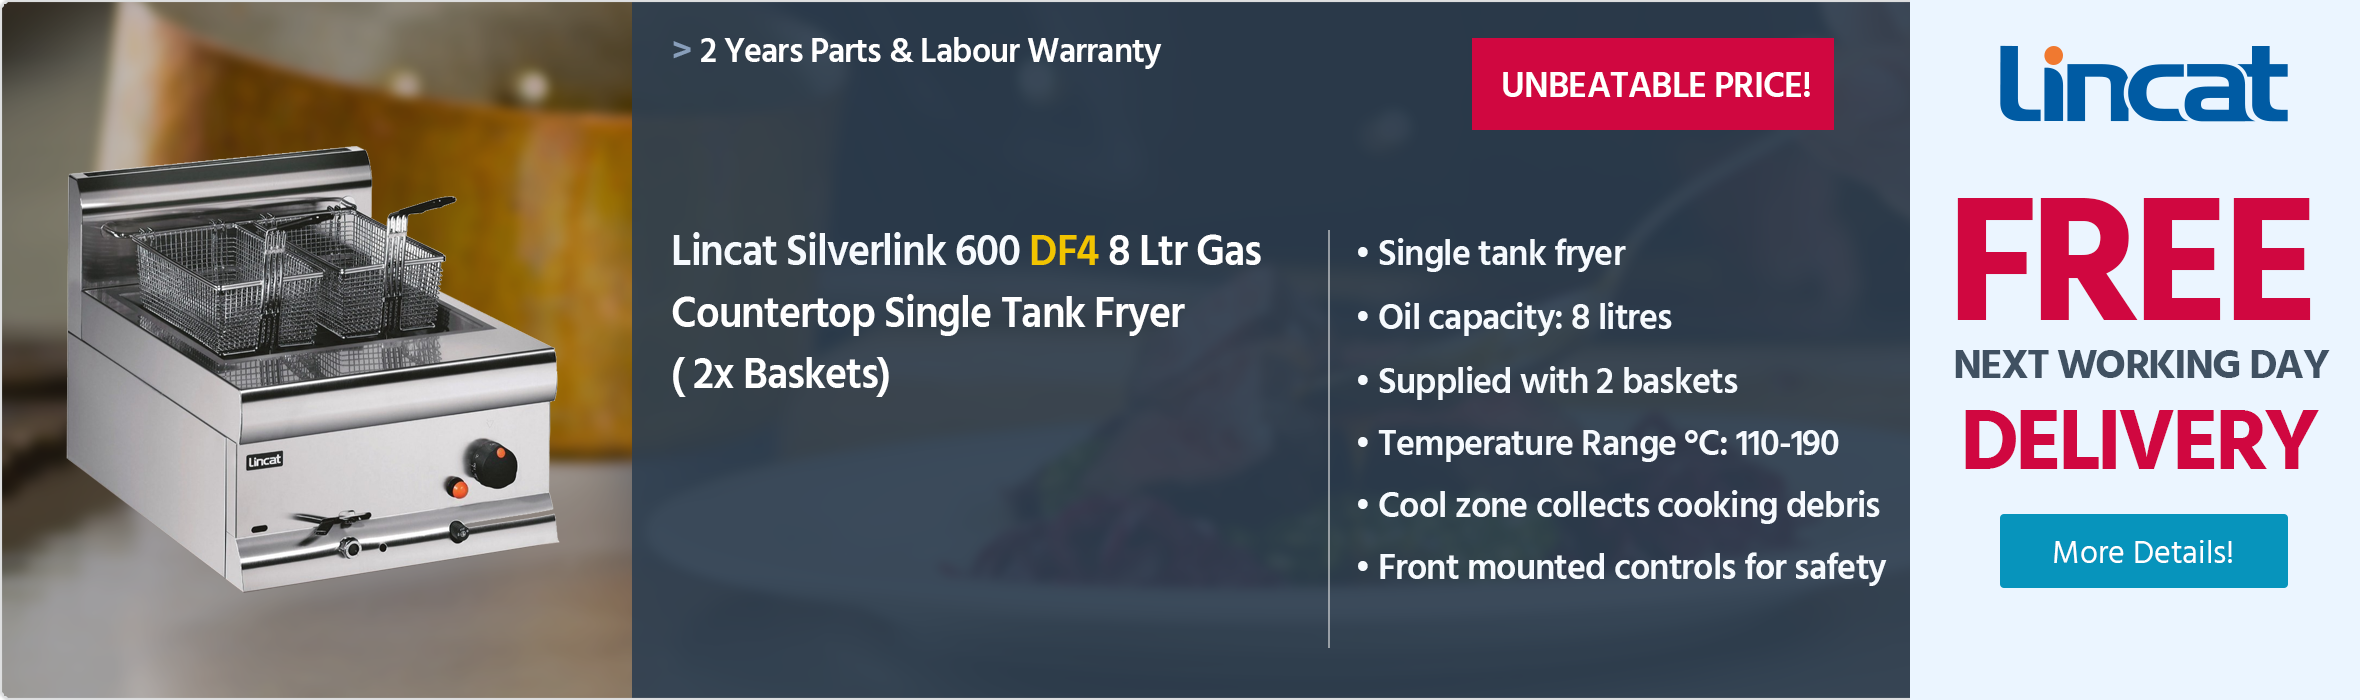 Lincat Silverlink 600 DF4 8 Ltr Gas Countertop Single Tank Fryer (2 x Baskets)